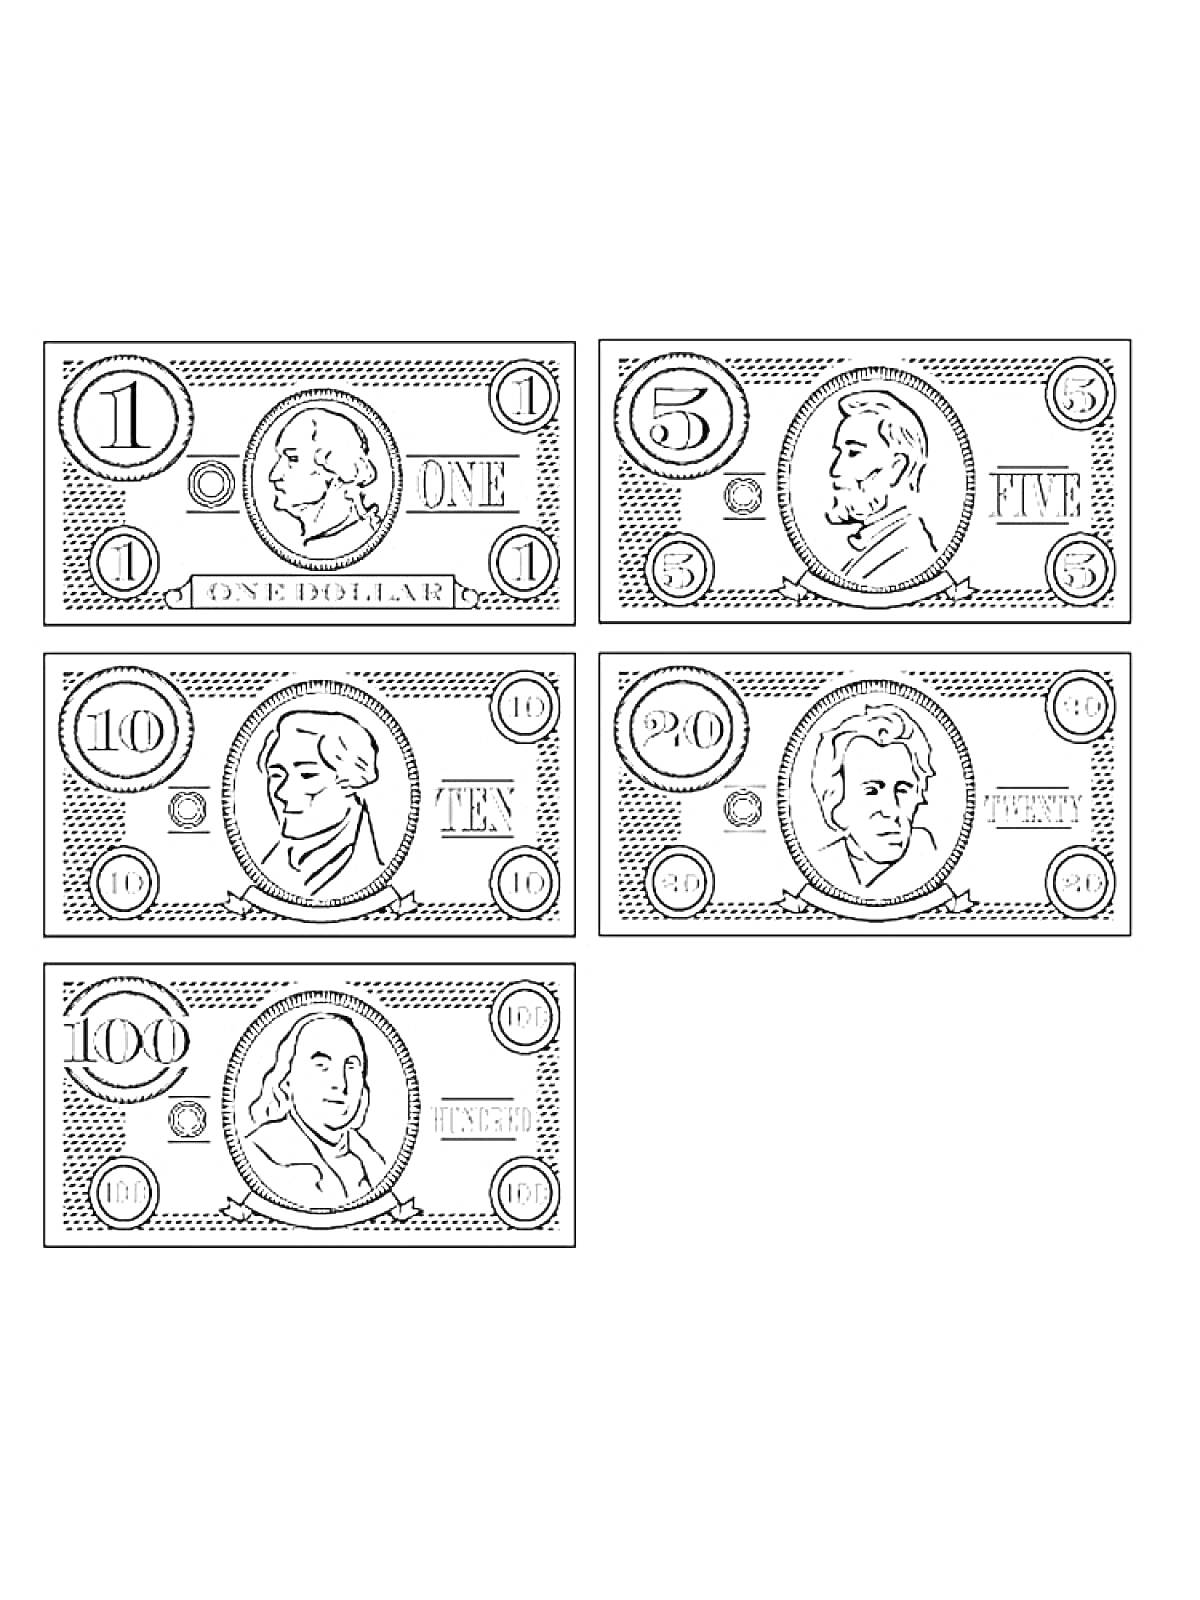 Раскраска Долларовые банкноты разного номинала: $1, $5, $10, $20 и $100 с изображением людей